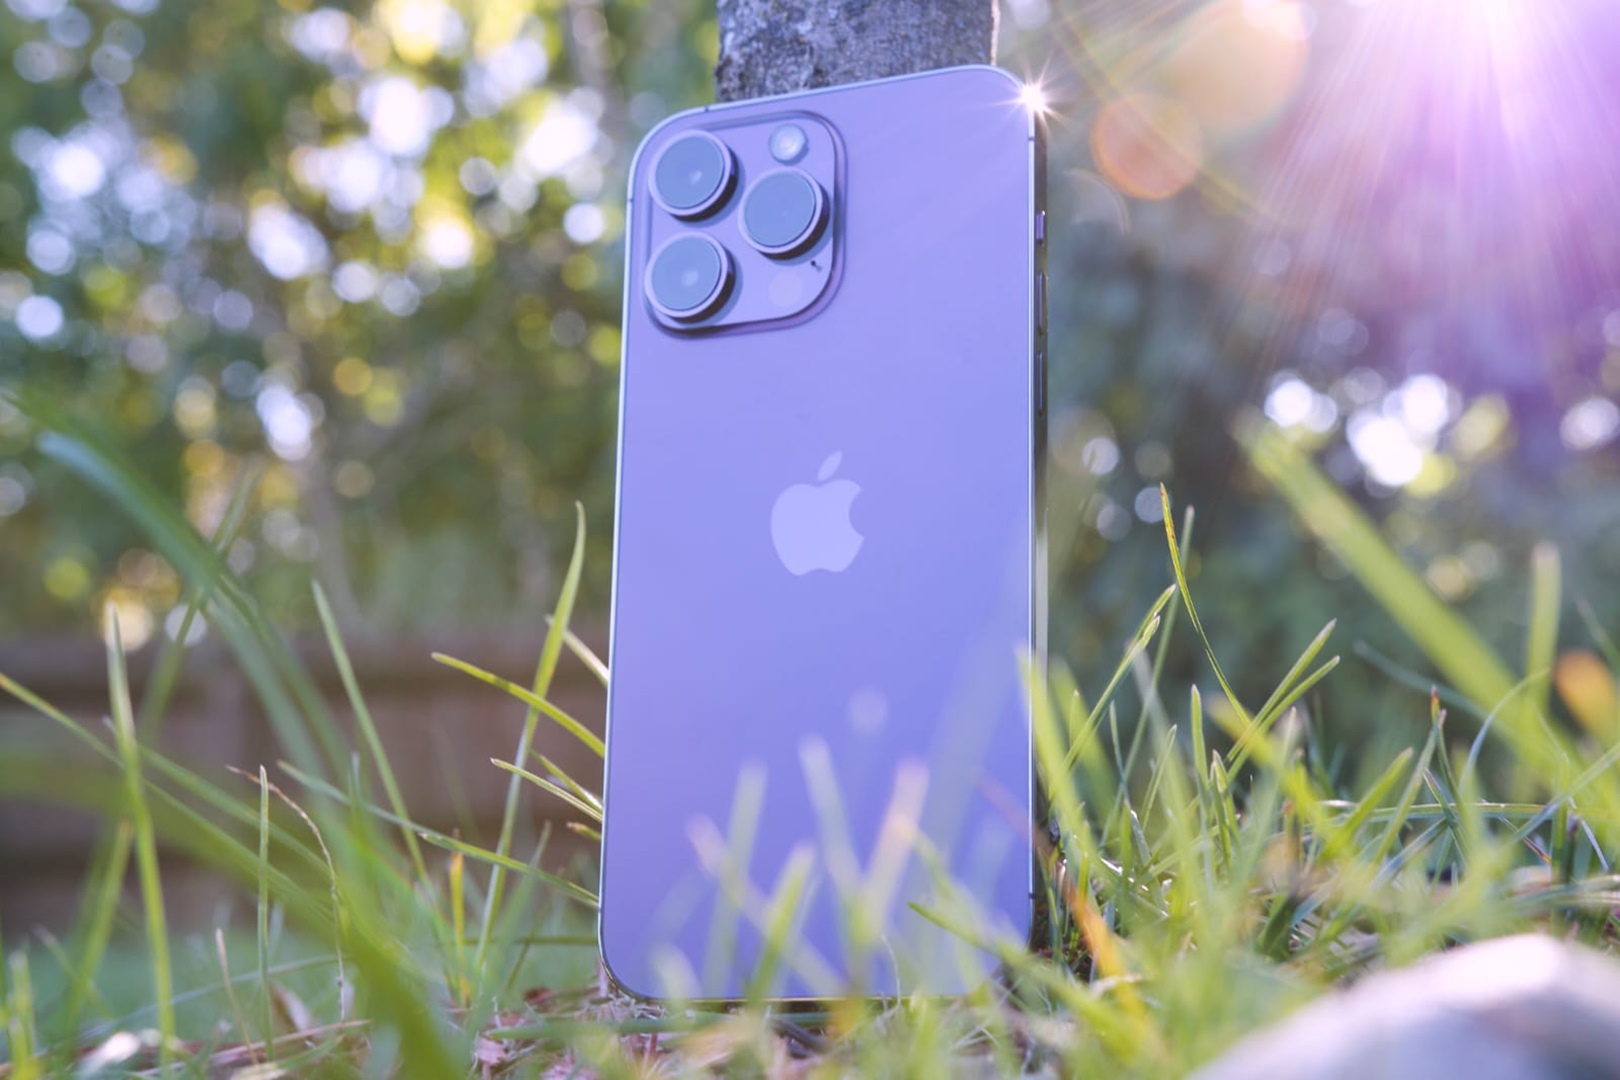 Buat yang Pengen Punya Iphone Baru : Cek Review iPhone 14 Pro Max Disini, Komplit Harga Terbaru Oktober 2023!